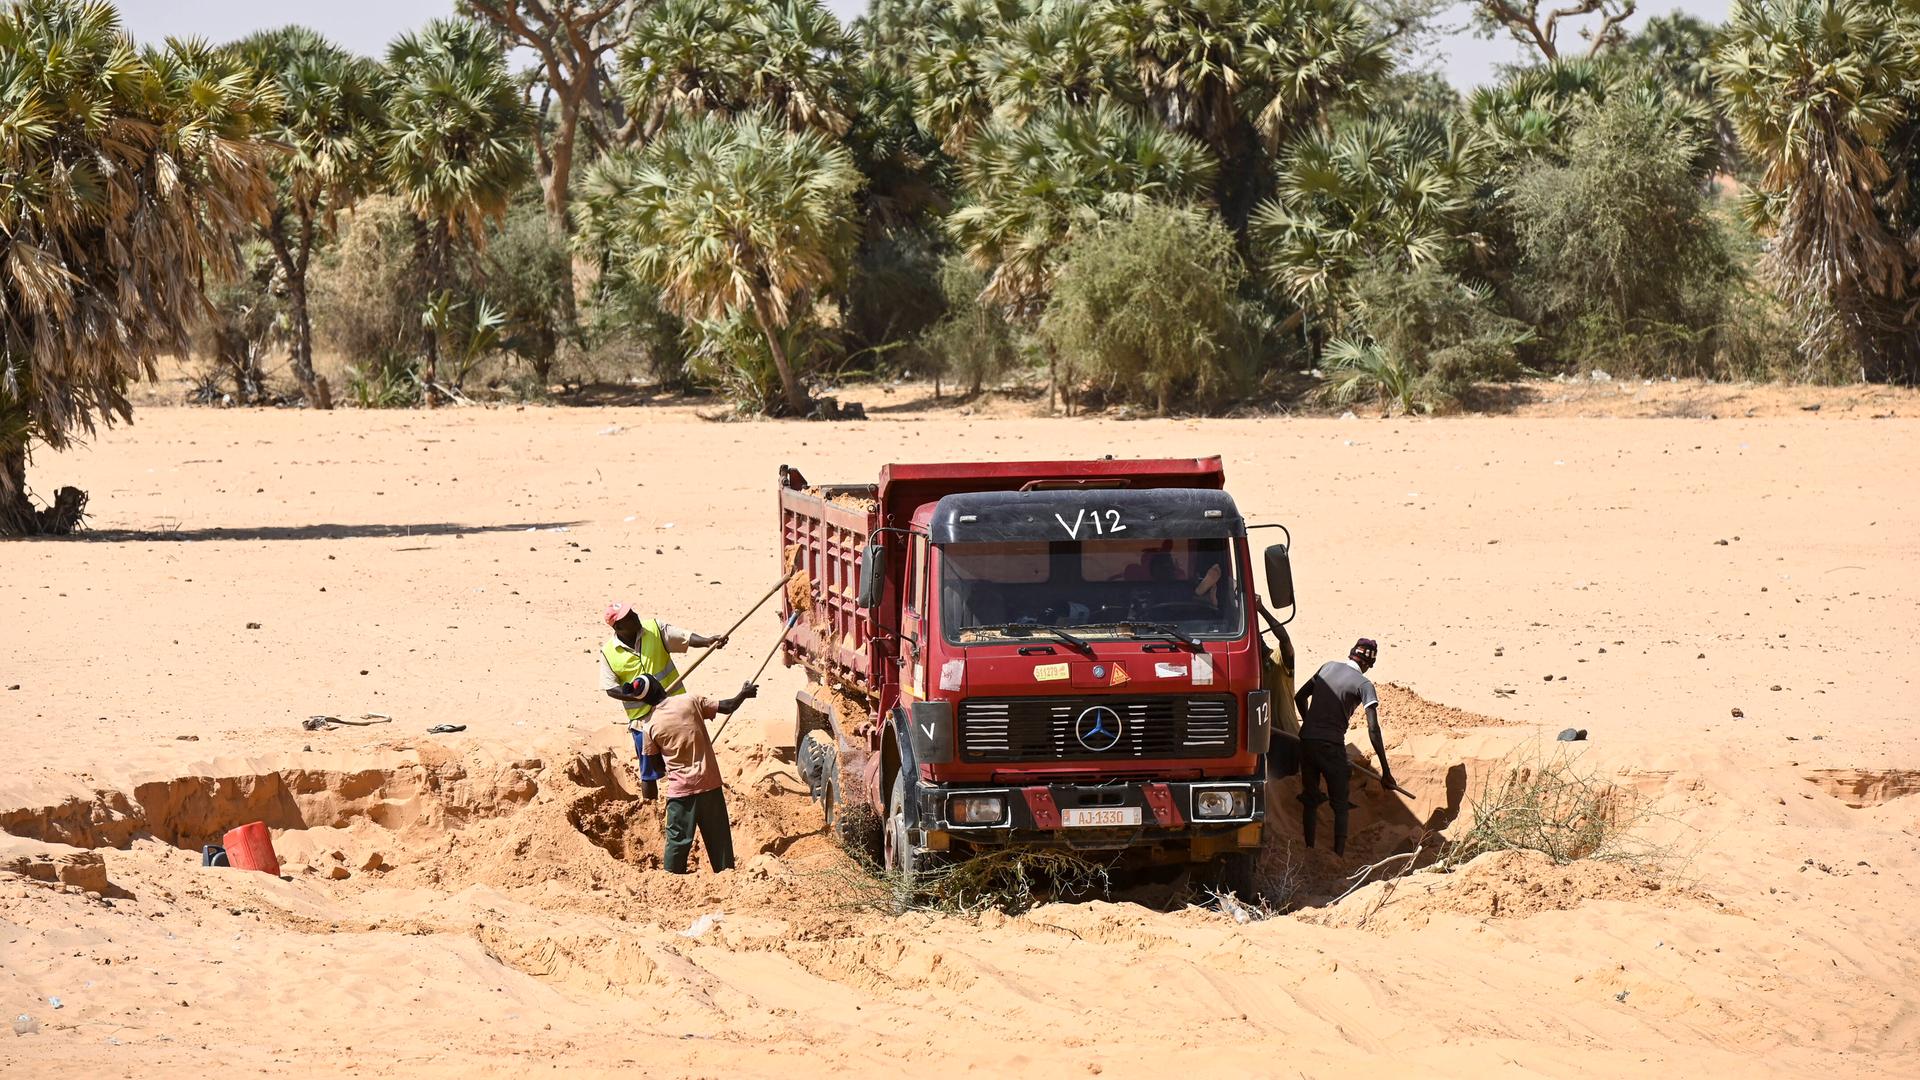 Ein Lastwagen auf sandigem Untergrund, Arbeiter schaufeln Sand in das Fahrzeug. Im Hintergrund sind Bäume zu sehen.